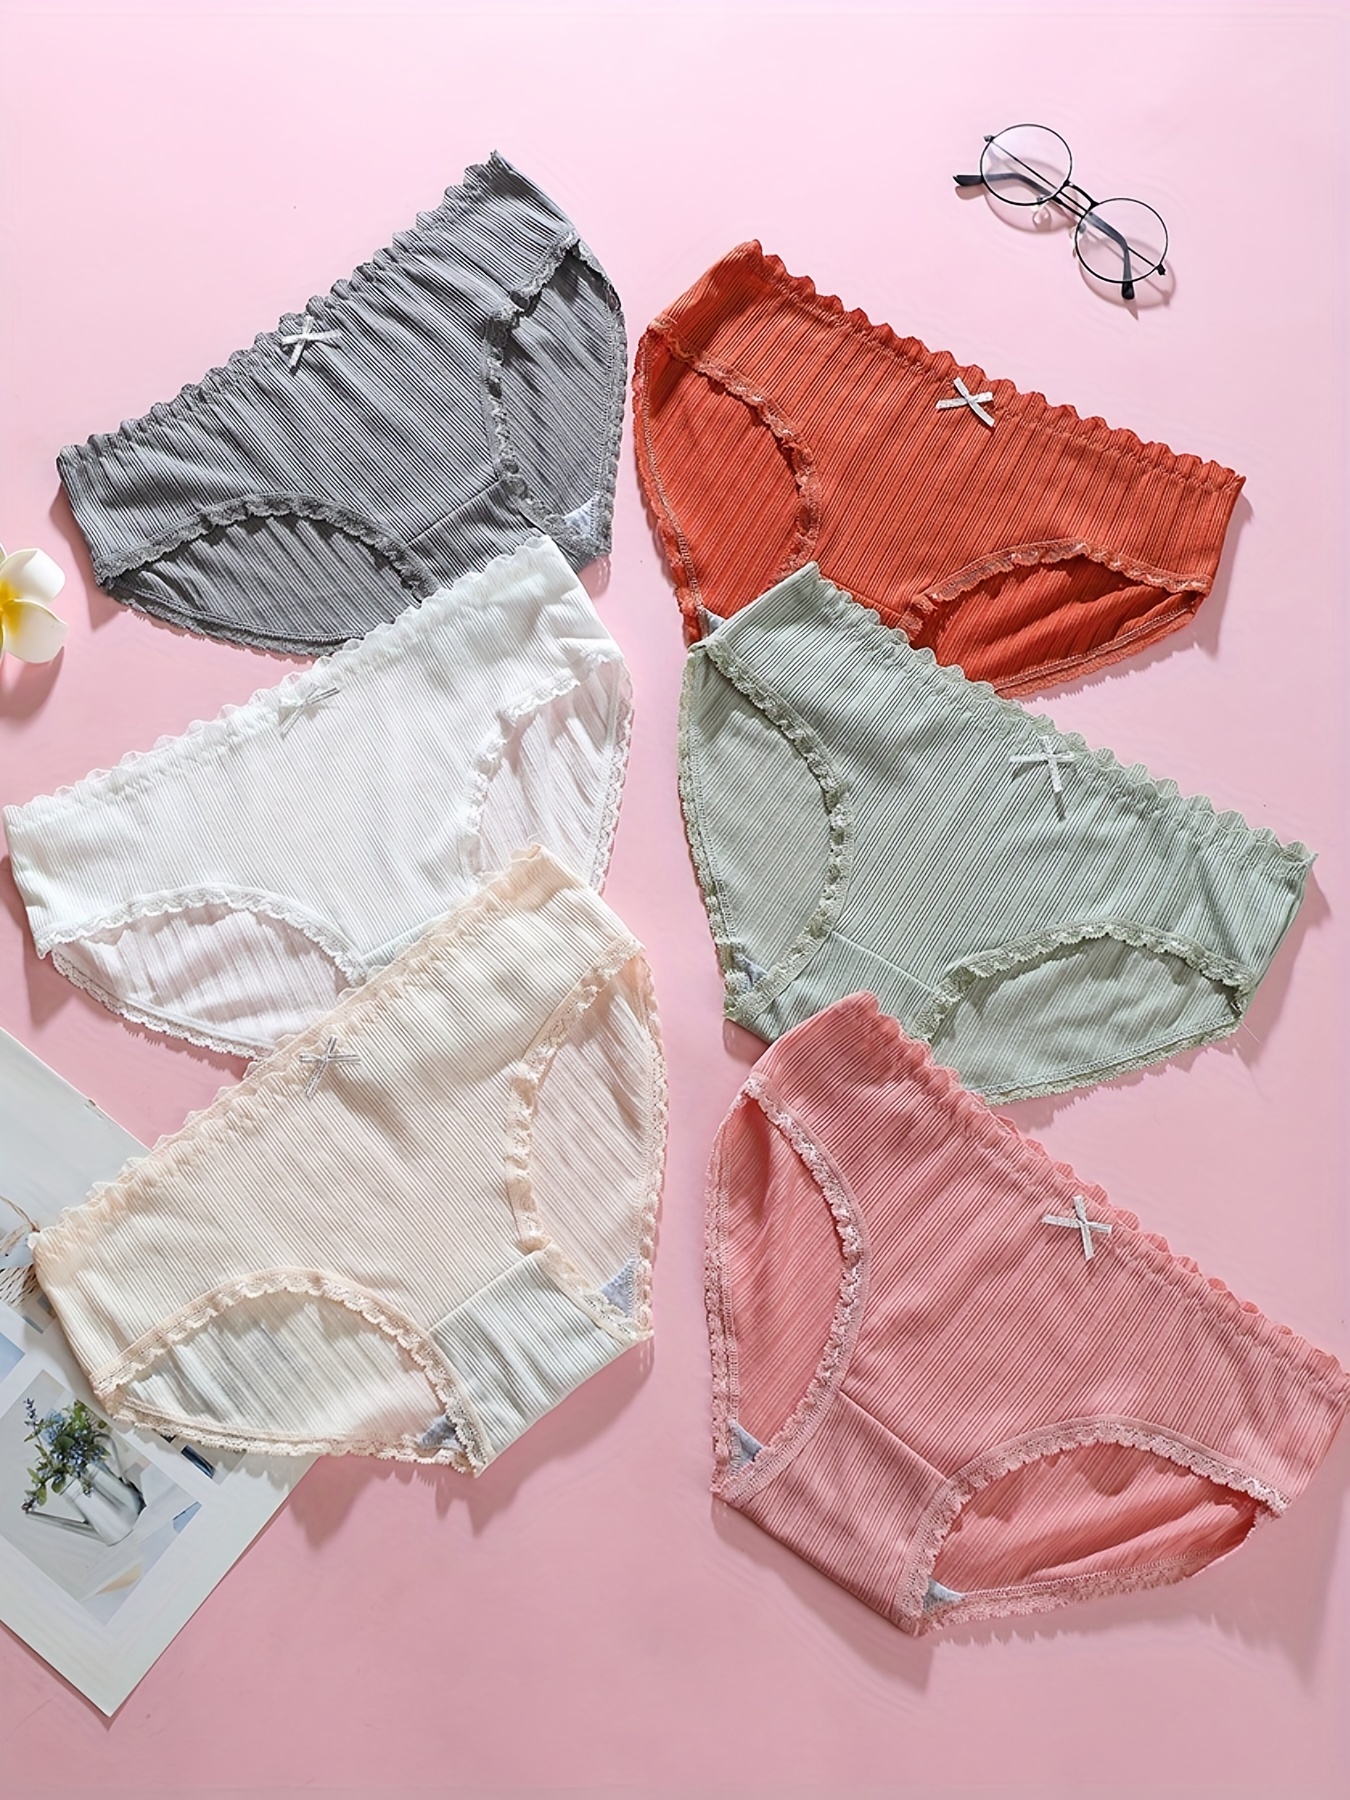 5pcs Heart & Fruit Print Thongs, Cute Comfy Lace Trim Intimates Panties,  Women's Lingerie & Underwear